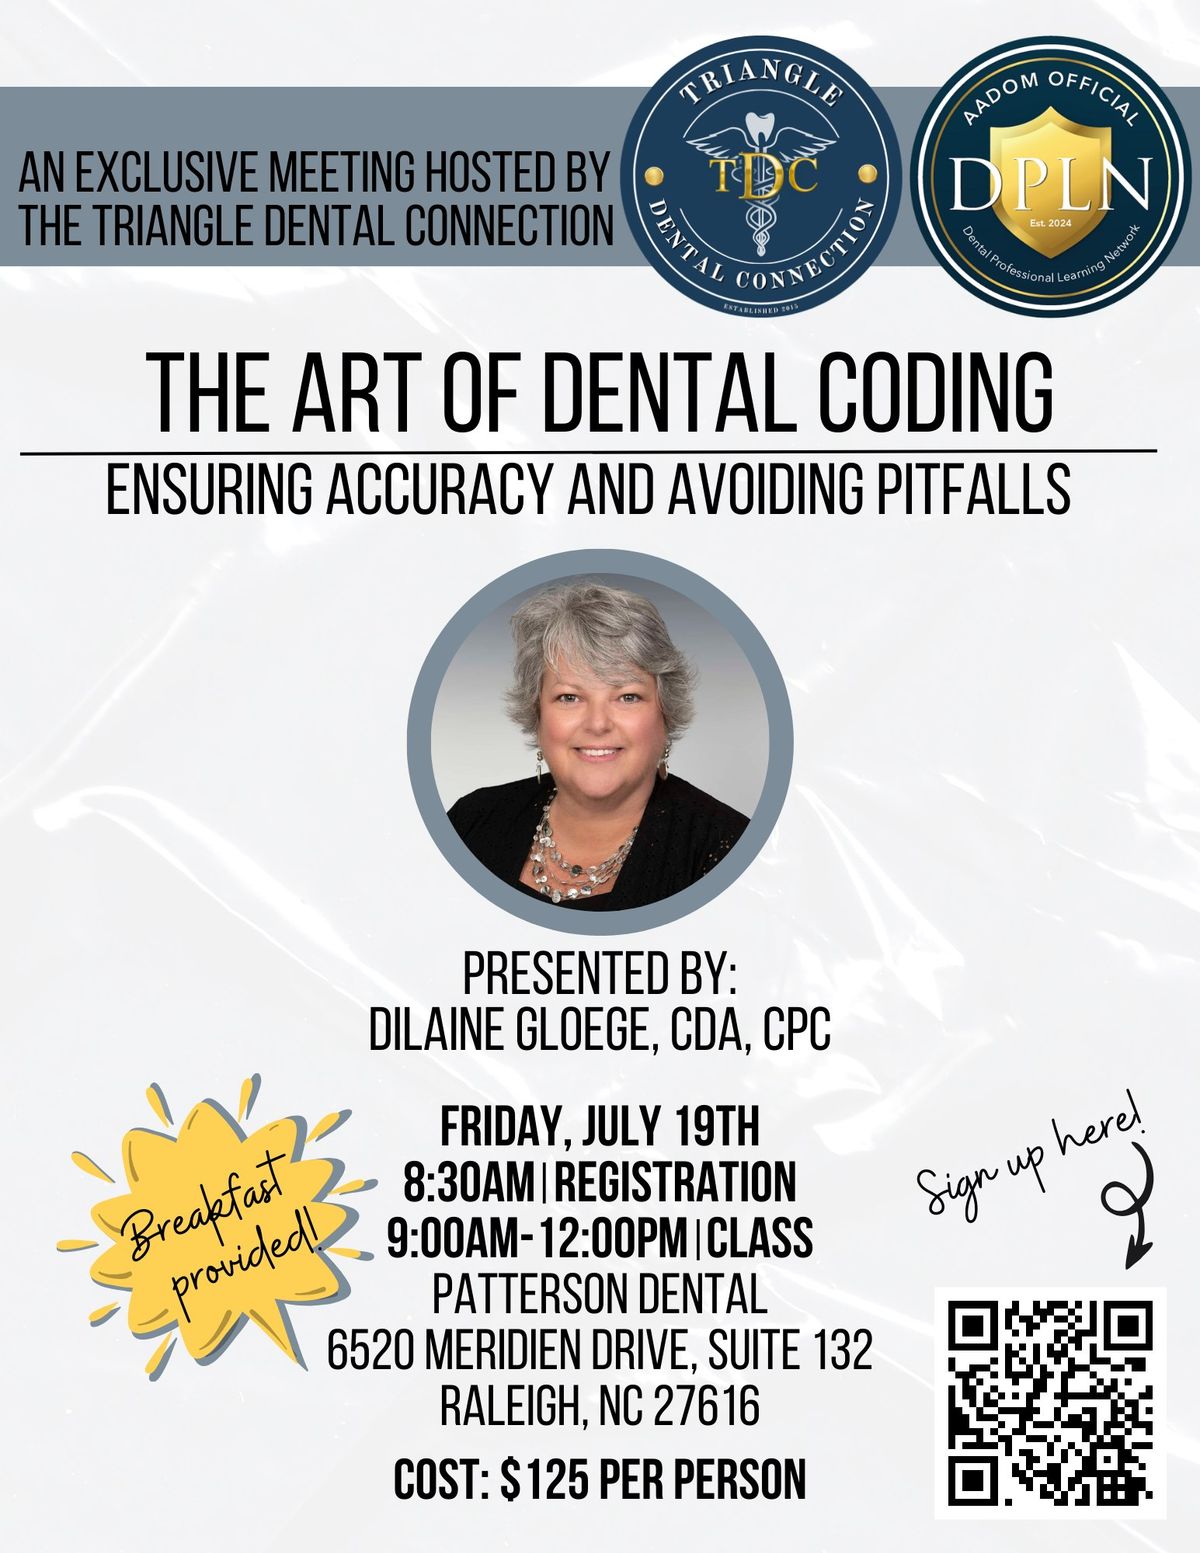 The Art of Dental Coding